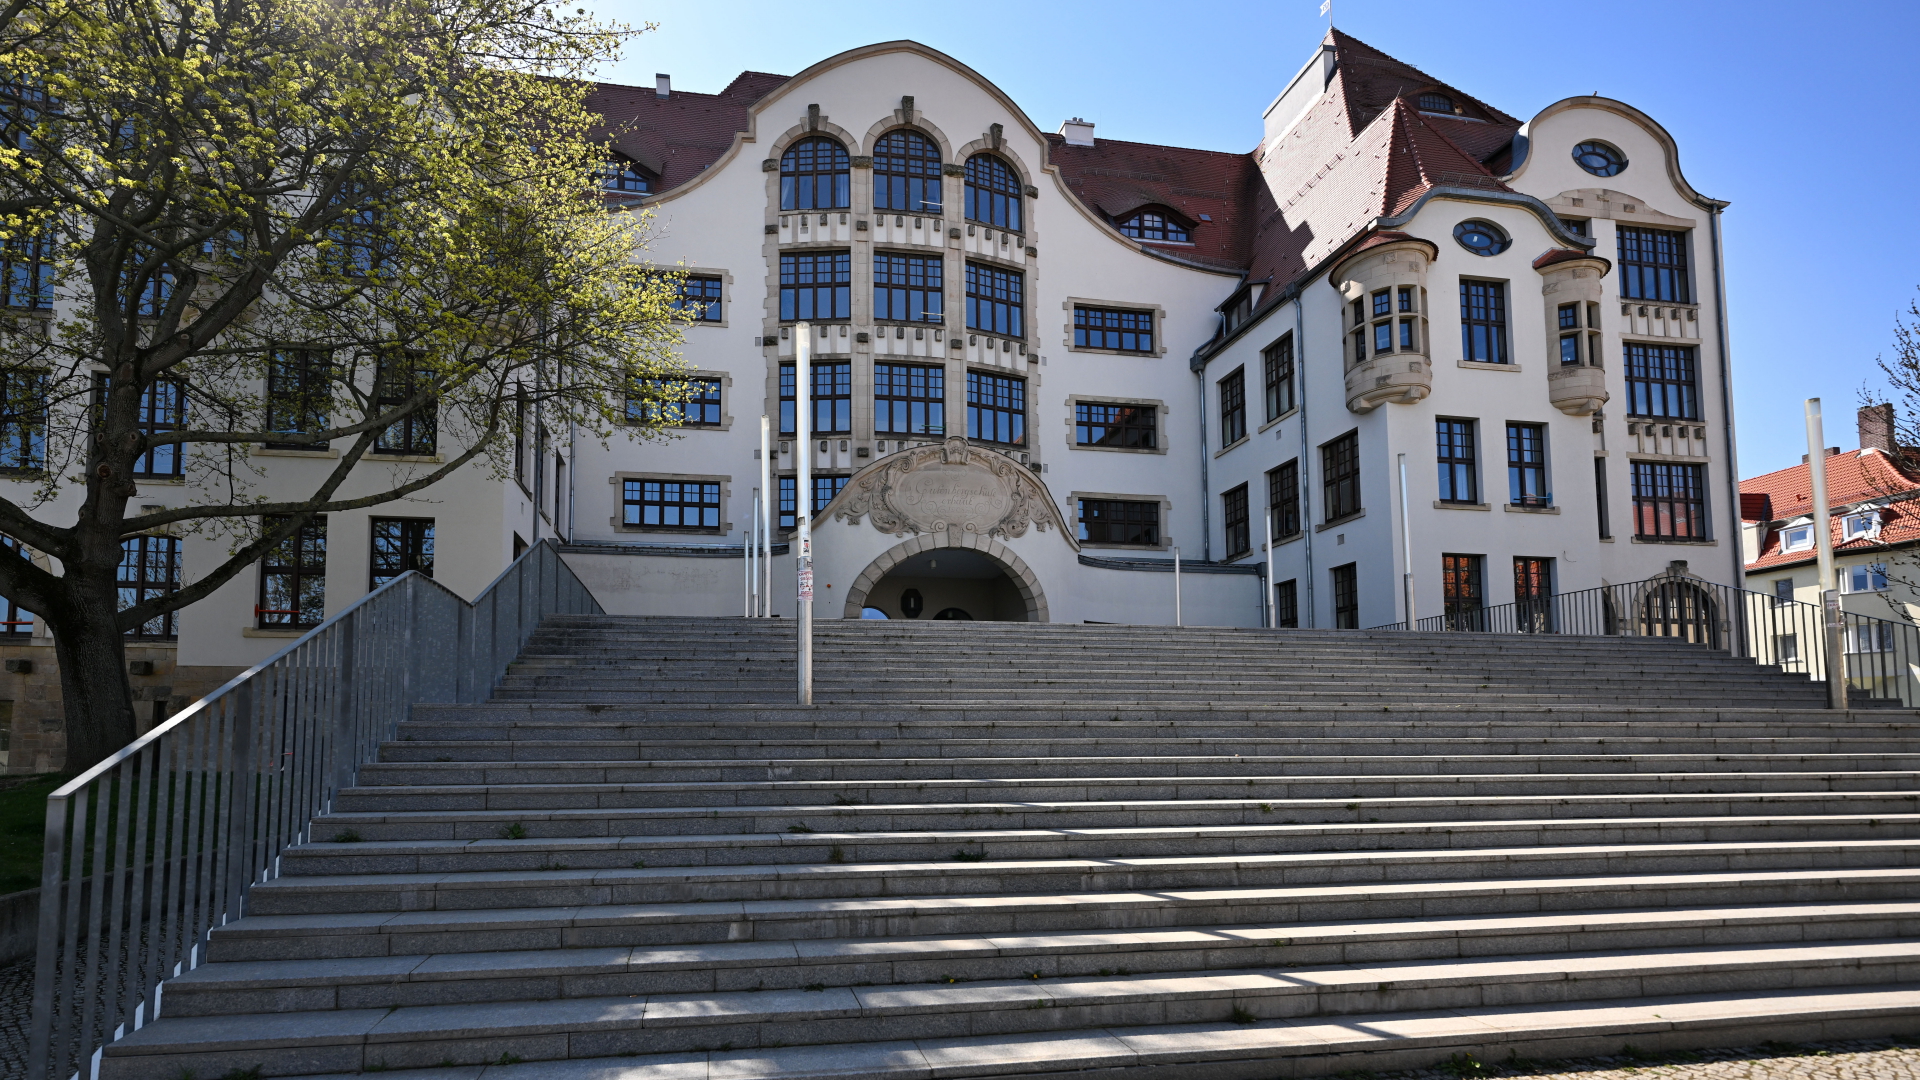 Das Gutenberg-Gymnasium 20 Jahre nach dem Amoklauf. Am 26. April 2002 erschießt ein ehemaliger Schüler am Gutenberg-Gymnasium 16 Menschen und tötet sich anschließend selbst. | dpa